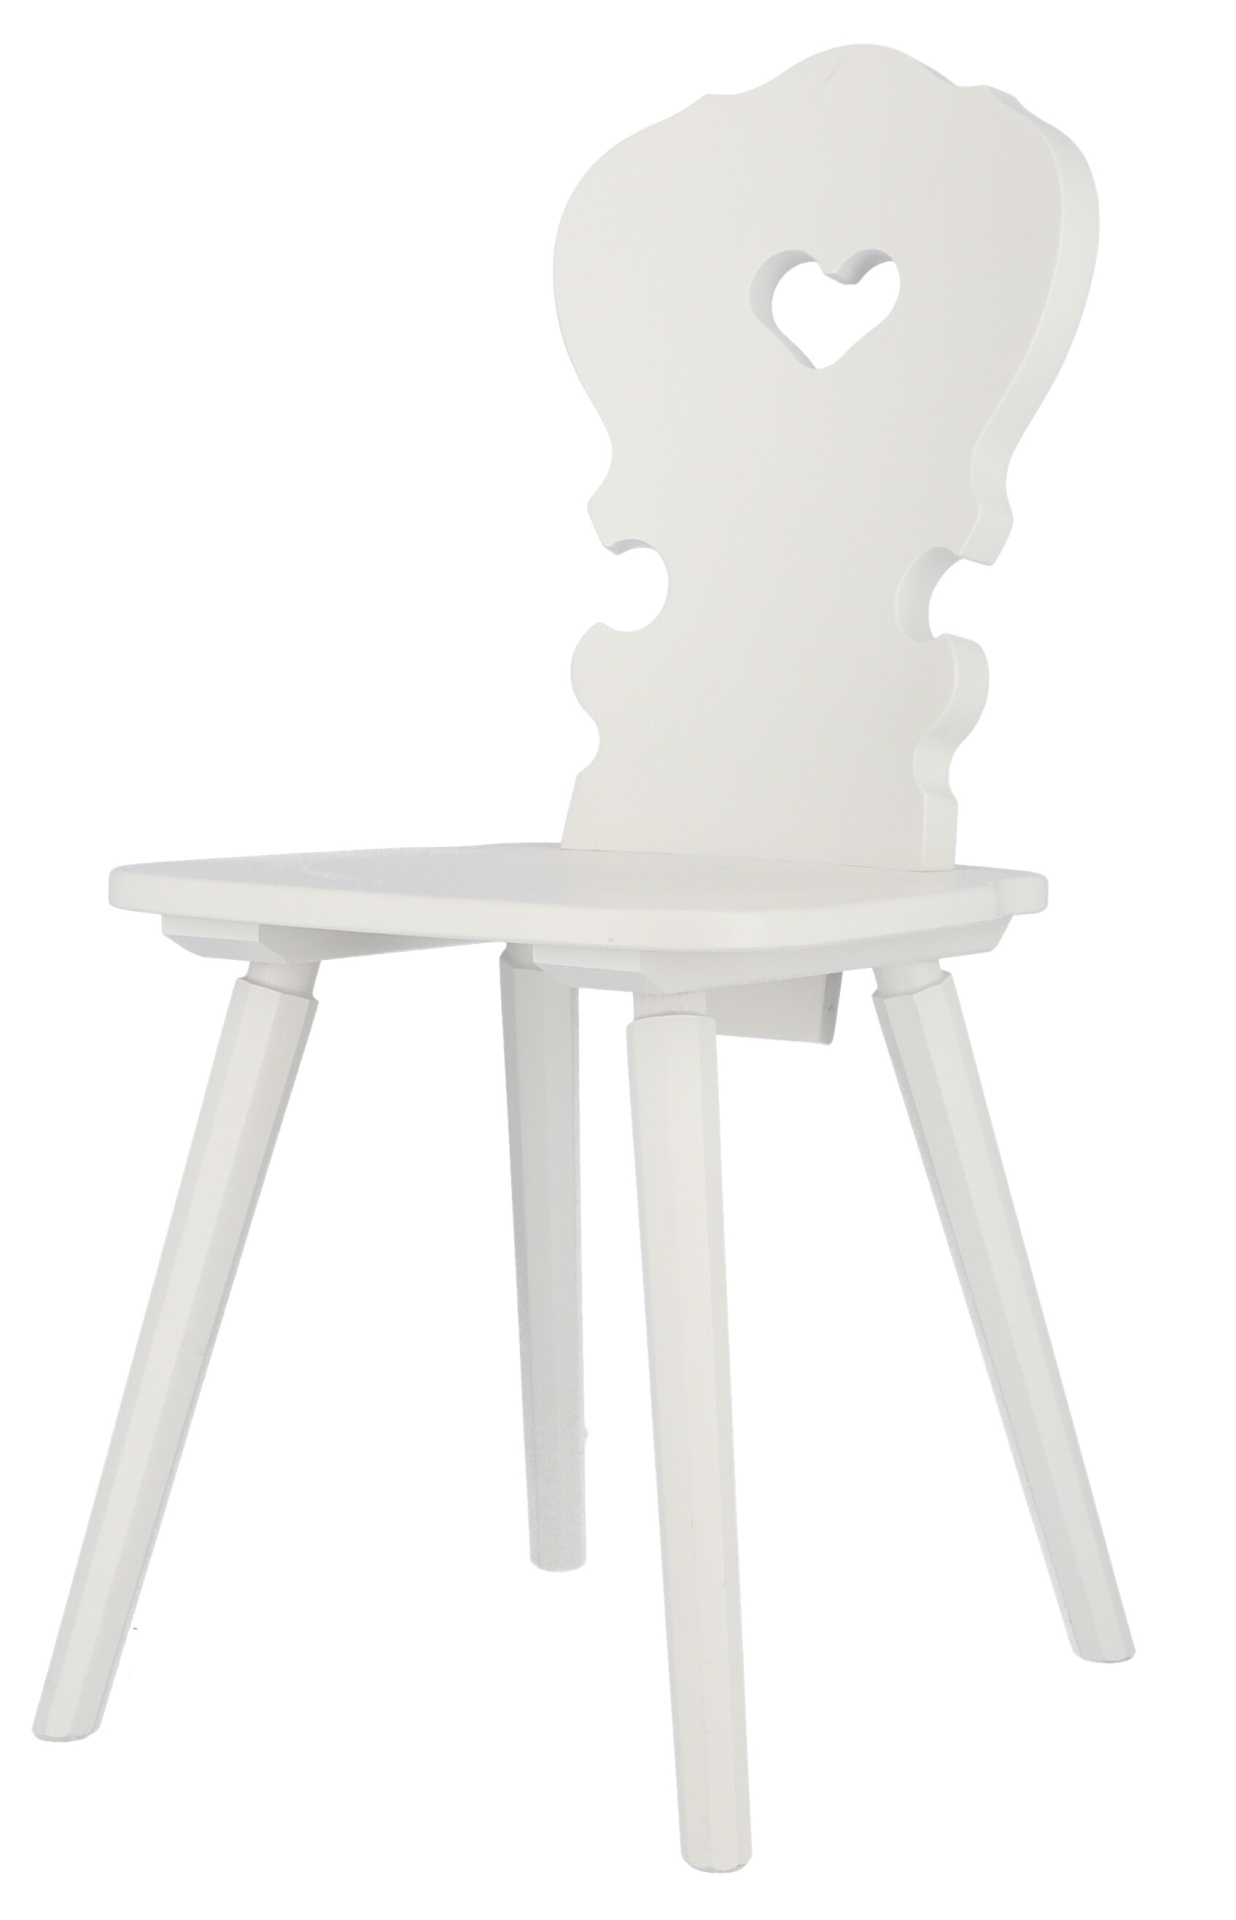 Der Stuhl Vienna ist ein absoluter Klassiker. Gefertigt wurde er aus Buchenholz und ist ein Produkt der Marke Jan Kurtz. Der Stuhl besitzt eine weiße Farbe.